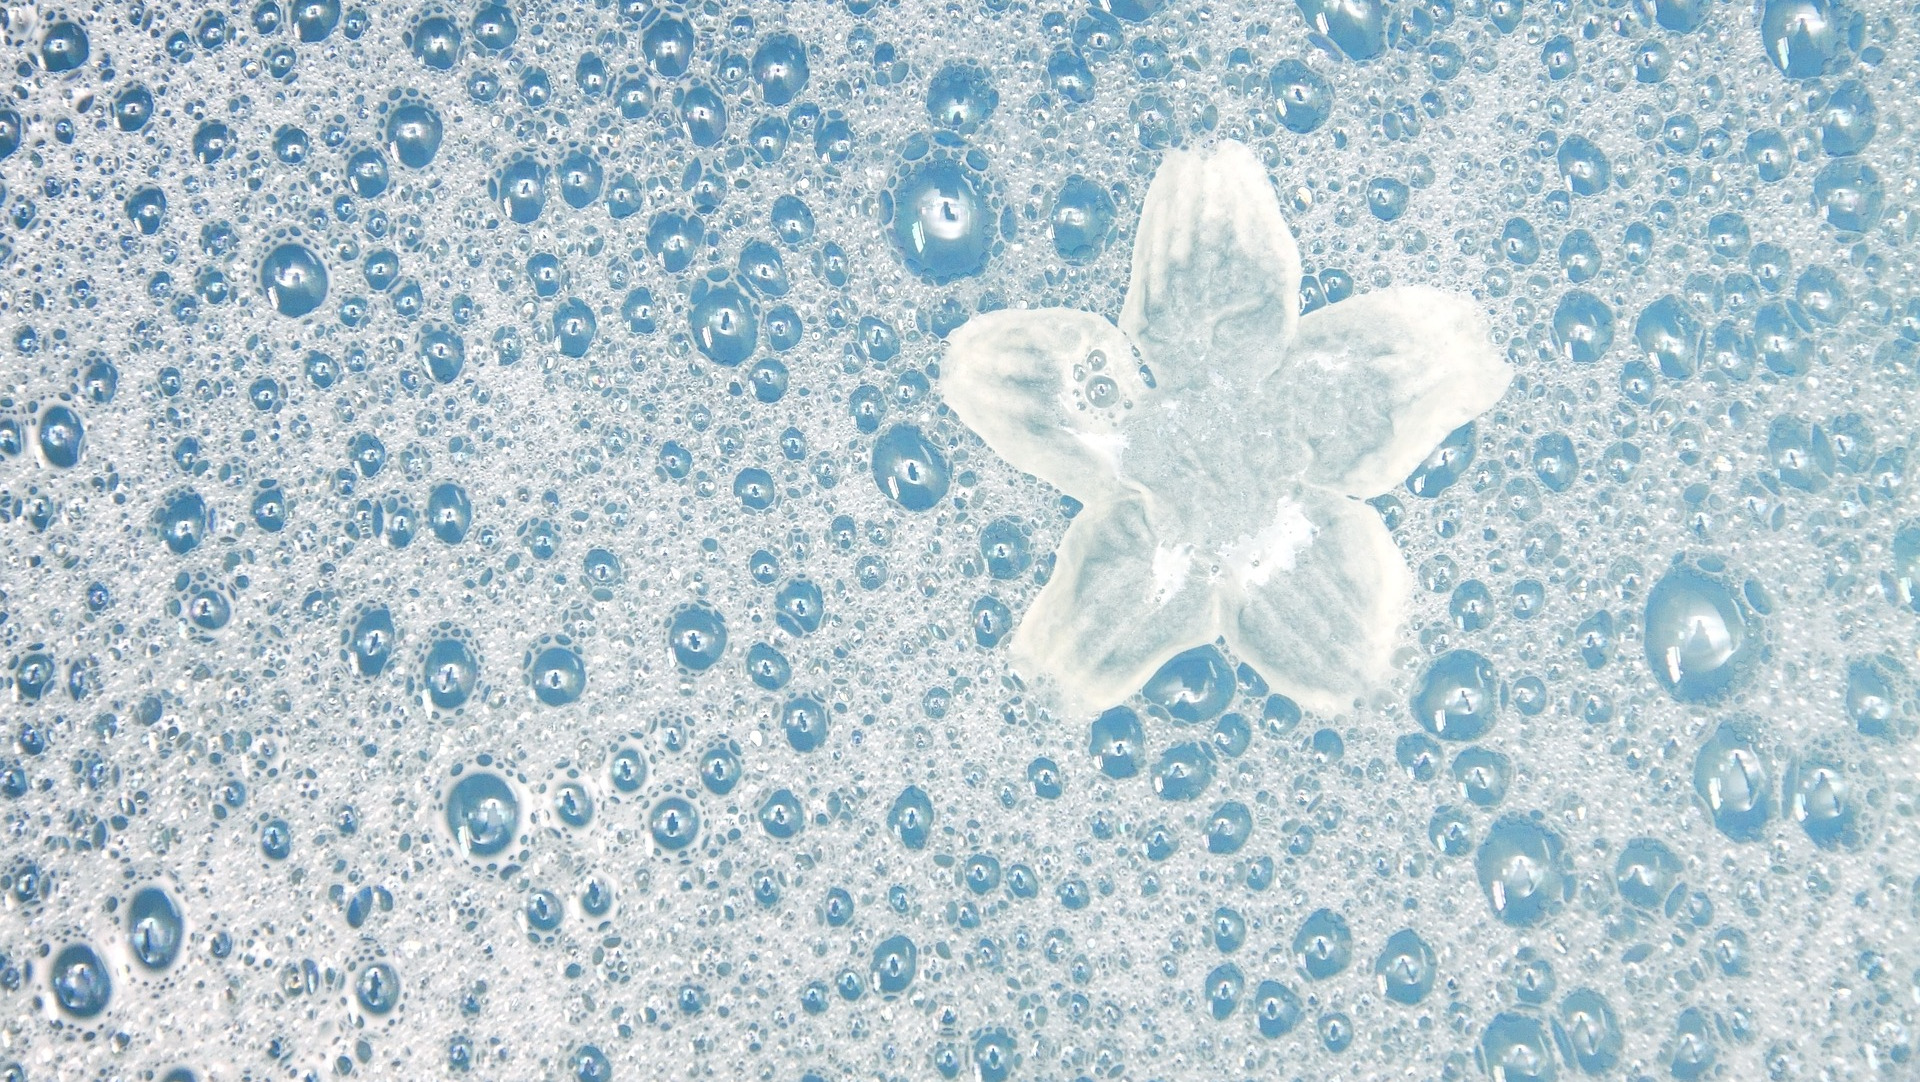 White flower in bubble bath